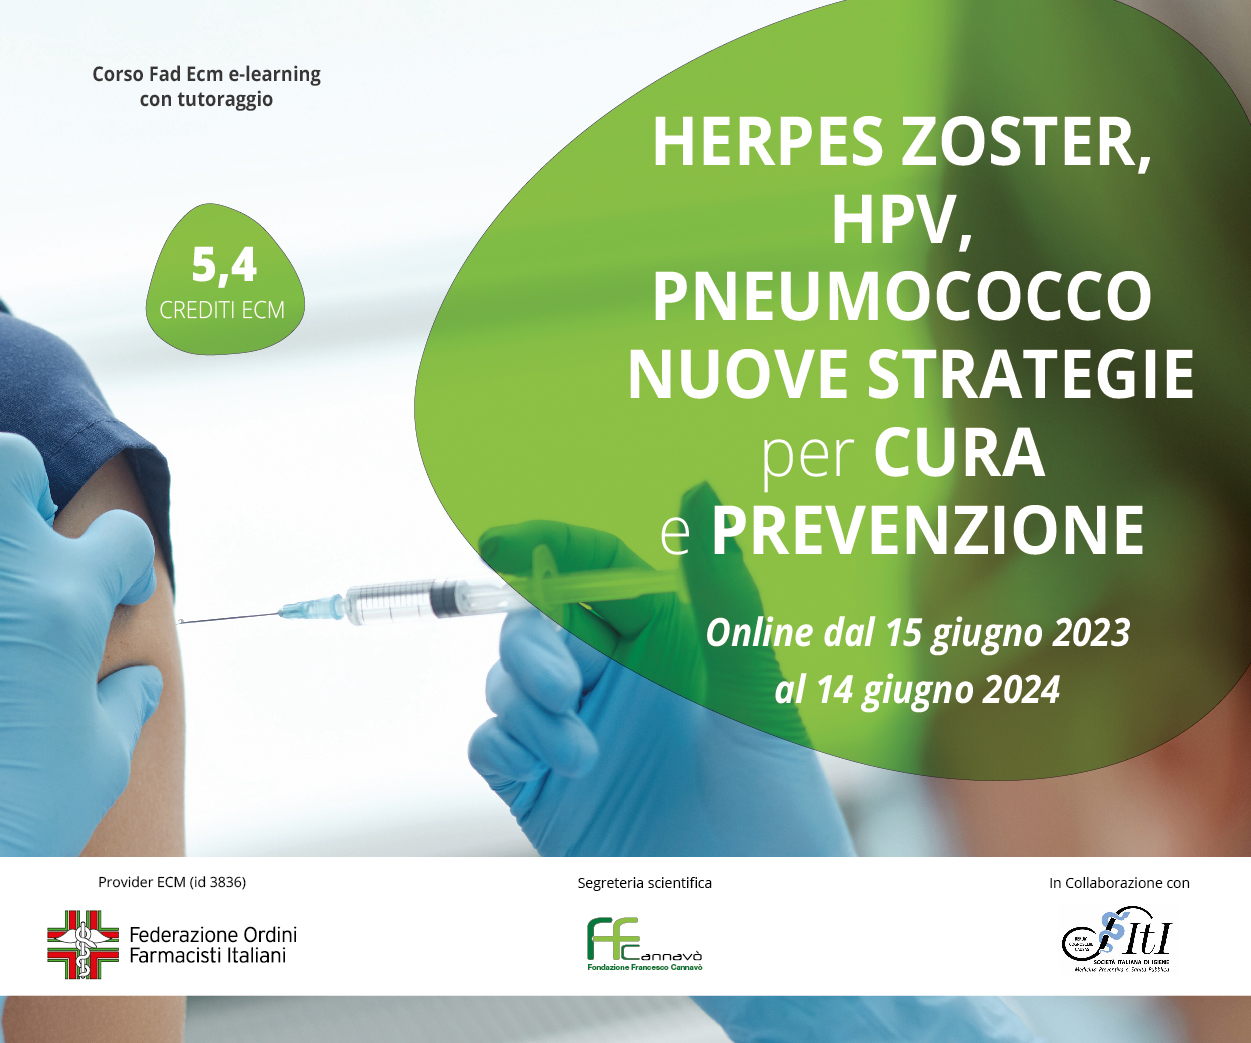 Herpes Zoster, HPV, Pneumococco - Nuove Strategie per Cura e Prevenzione